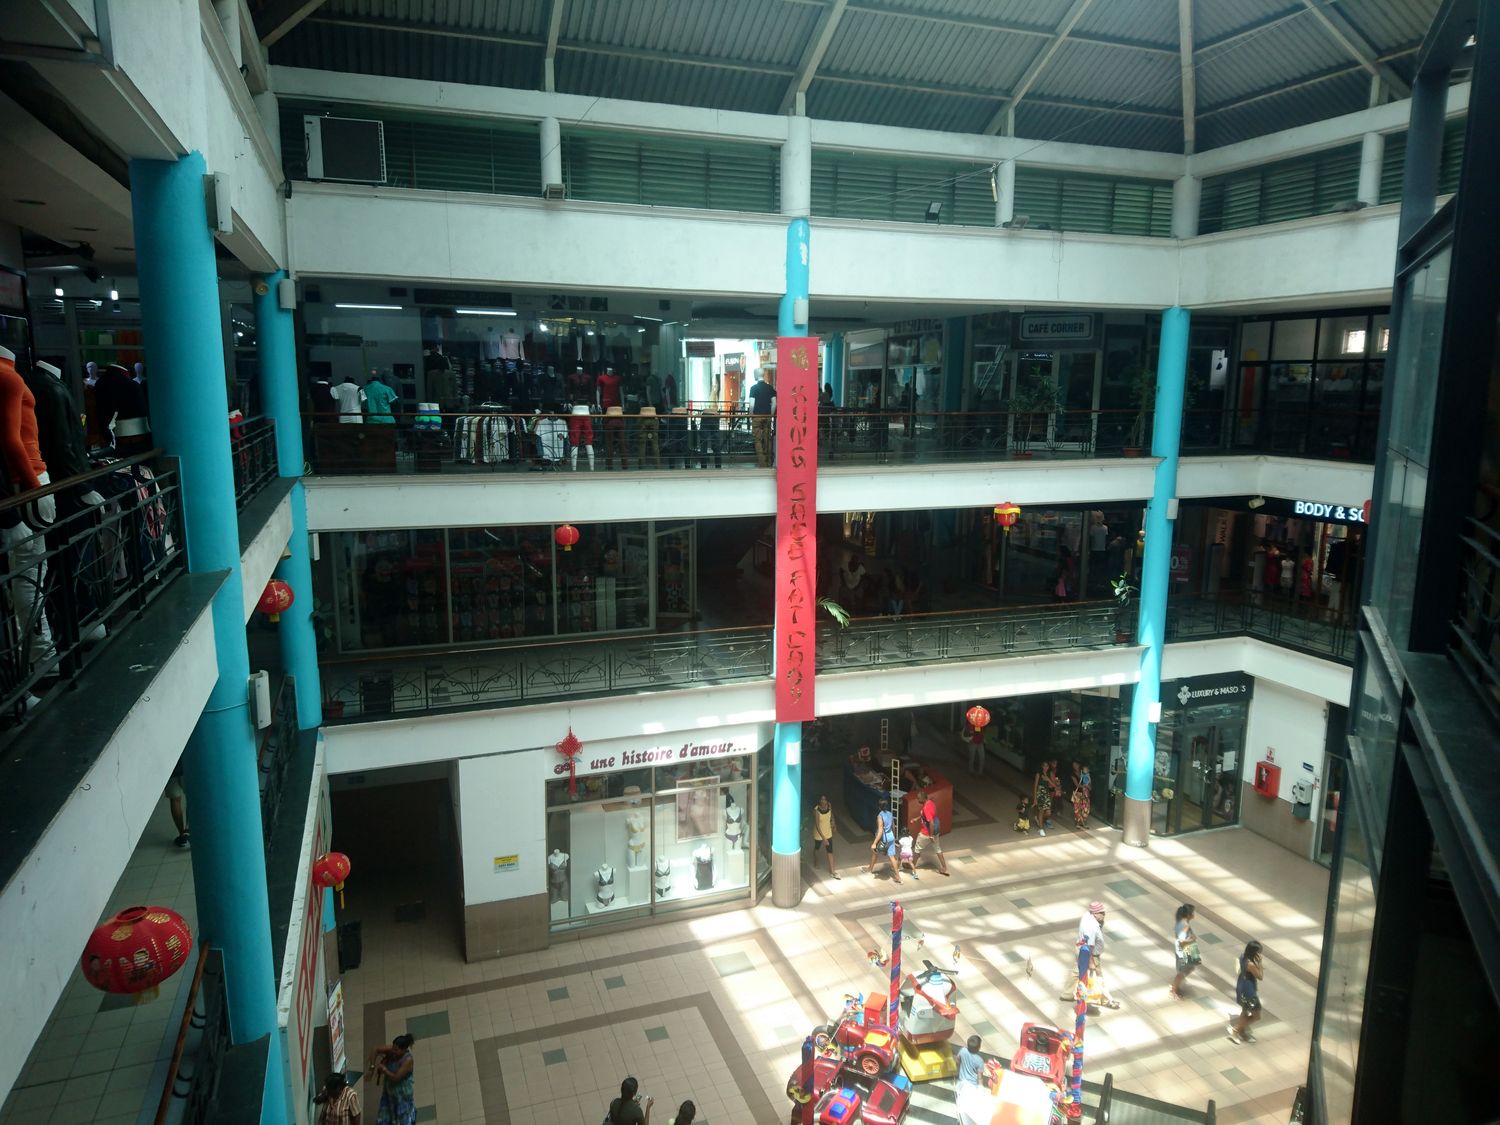 Le centre commercial dispose de trois niveaux, comprenant essentiellement des boutiques de vêtements et des restaurants.